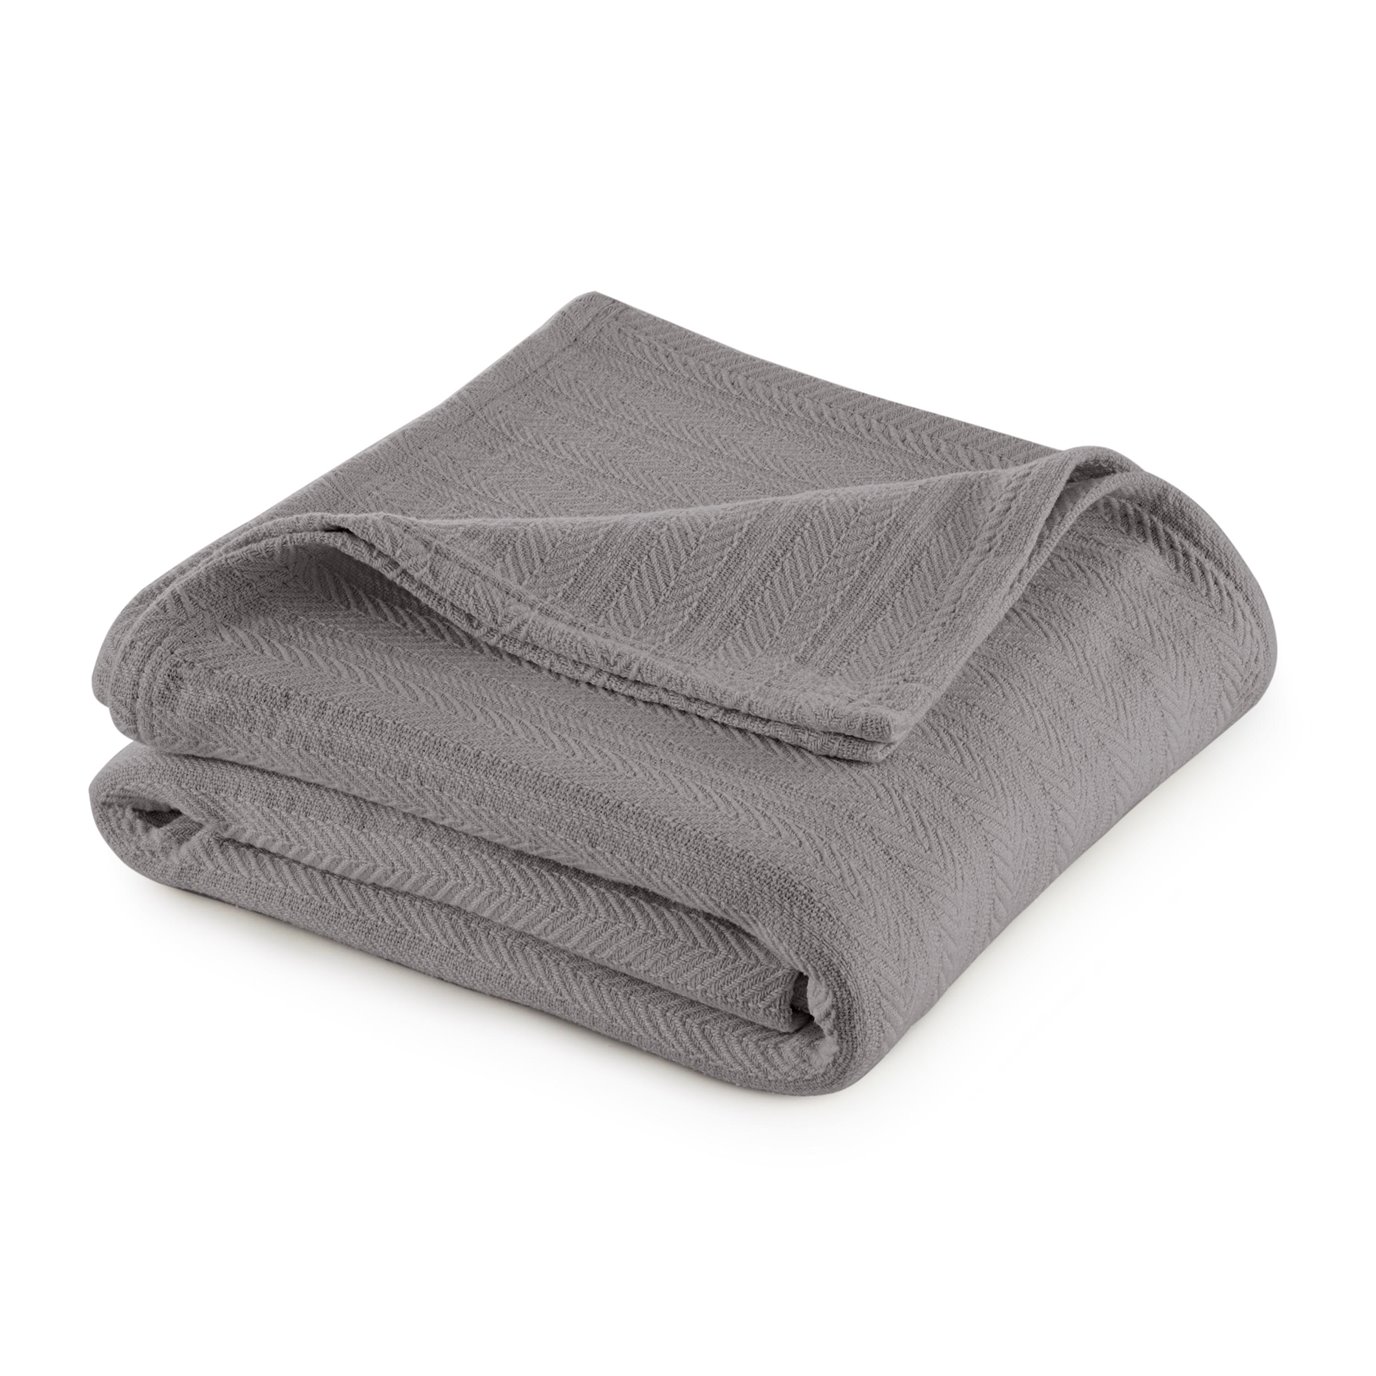 Vellux Cotton Full/Queen Gray Blanket